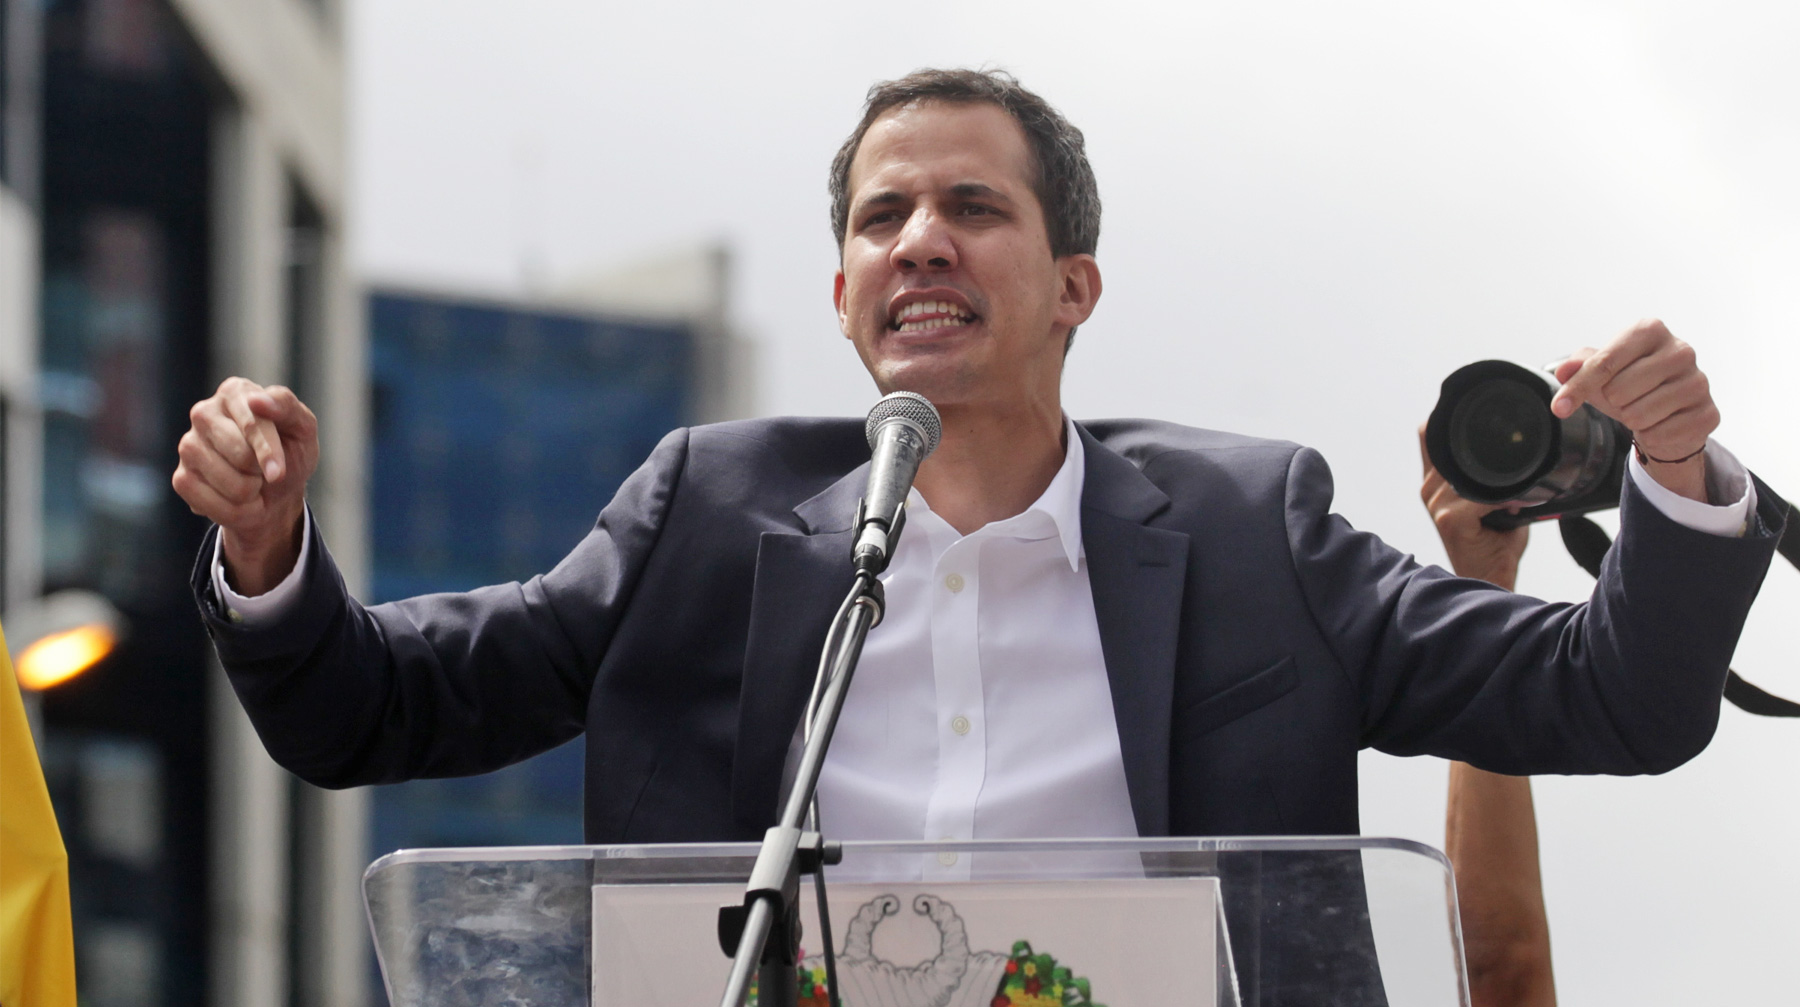 Самопровозглашенный президент согласовывал с США стратегию протеста против Мадуро Хуан Гуайдо объявляет себя главой Венесуэлы, 23 января 2019 года, Венесуэла, Каракас